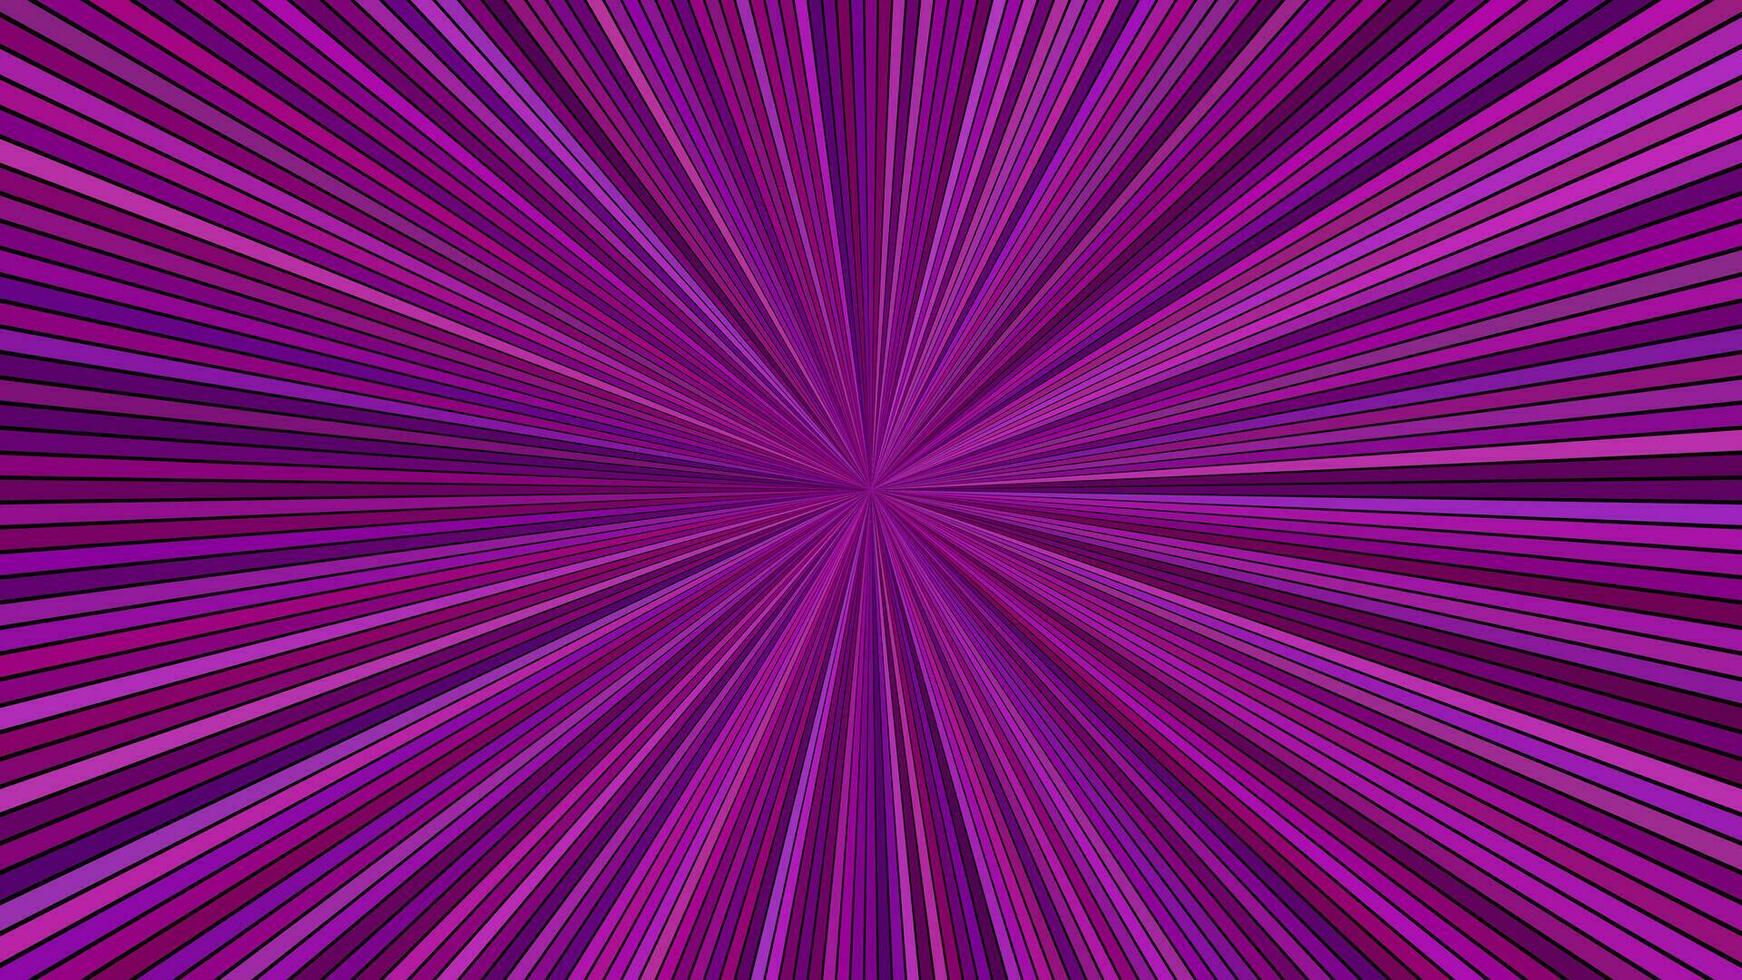 lila abstrakt hypnotisch Star platzen Streifen Hintergrund - - Vektor Explosion Illustration